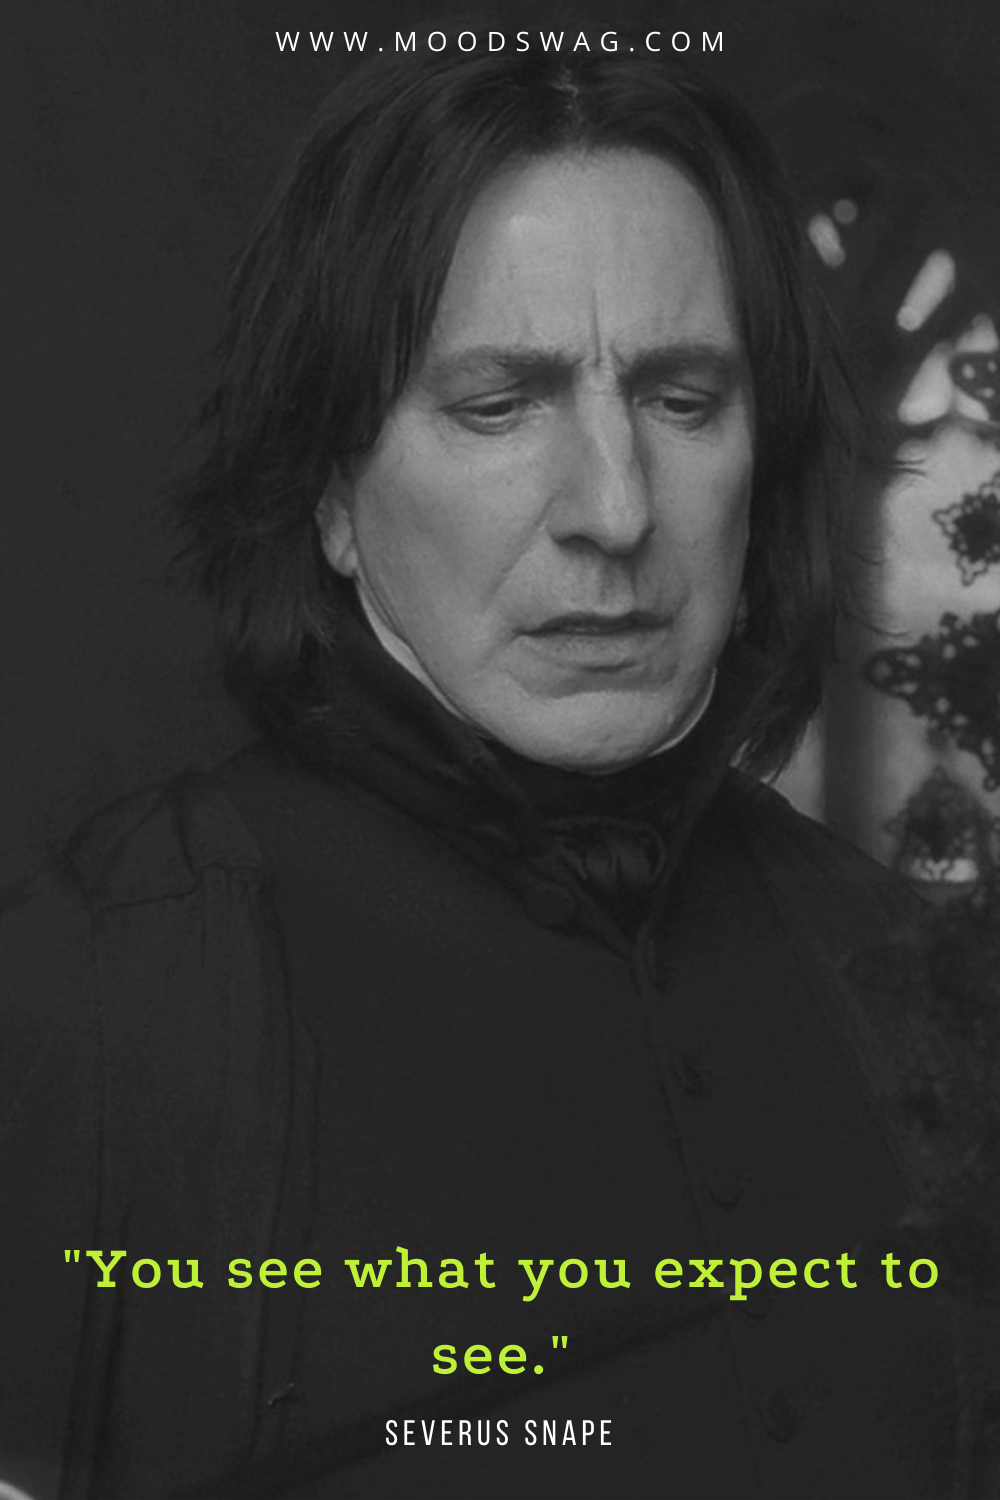 Severus snape quotes